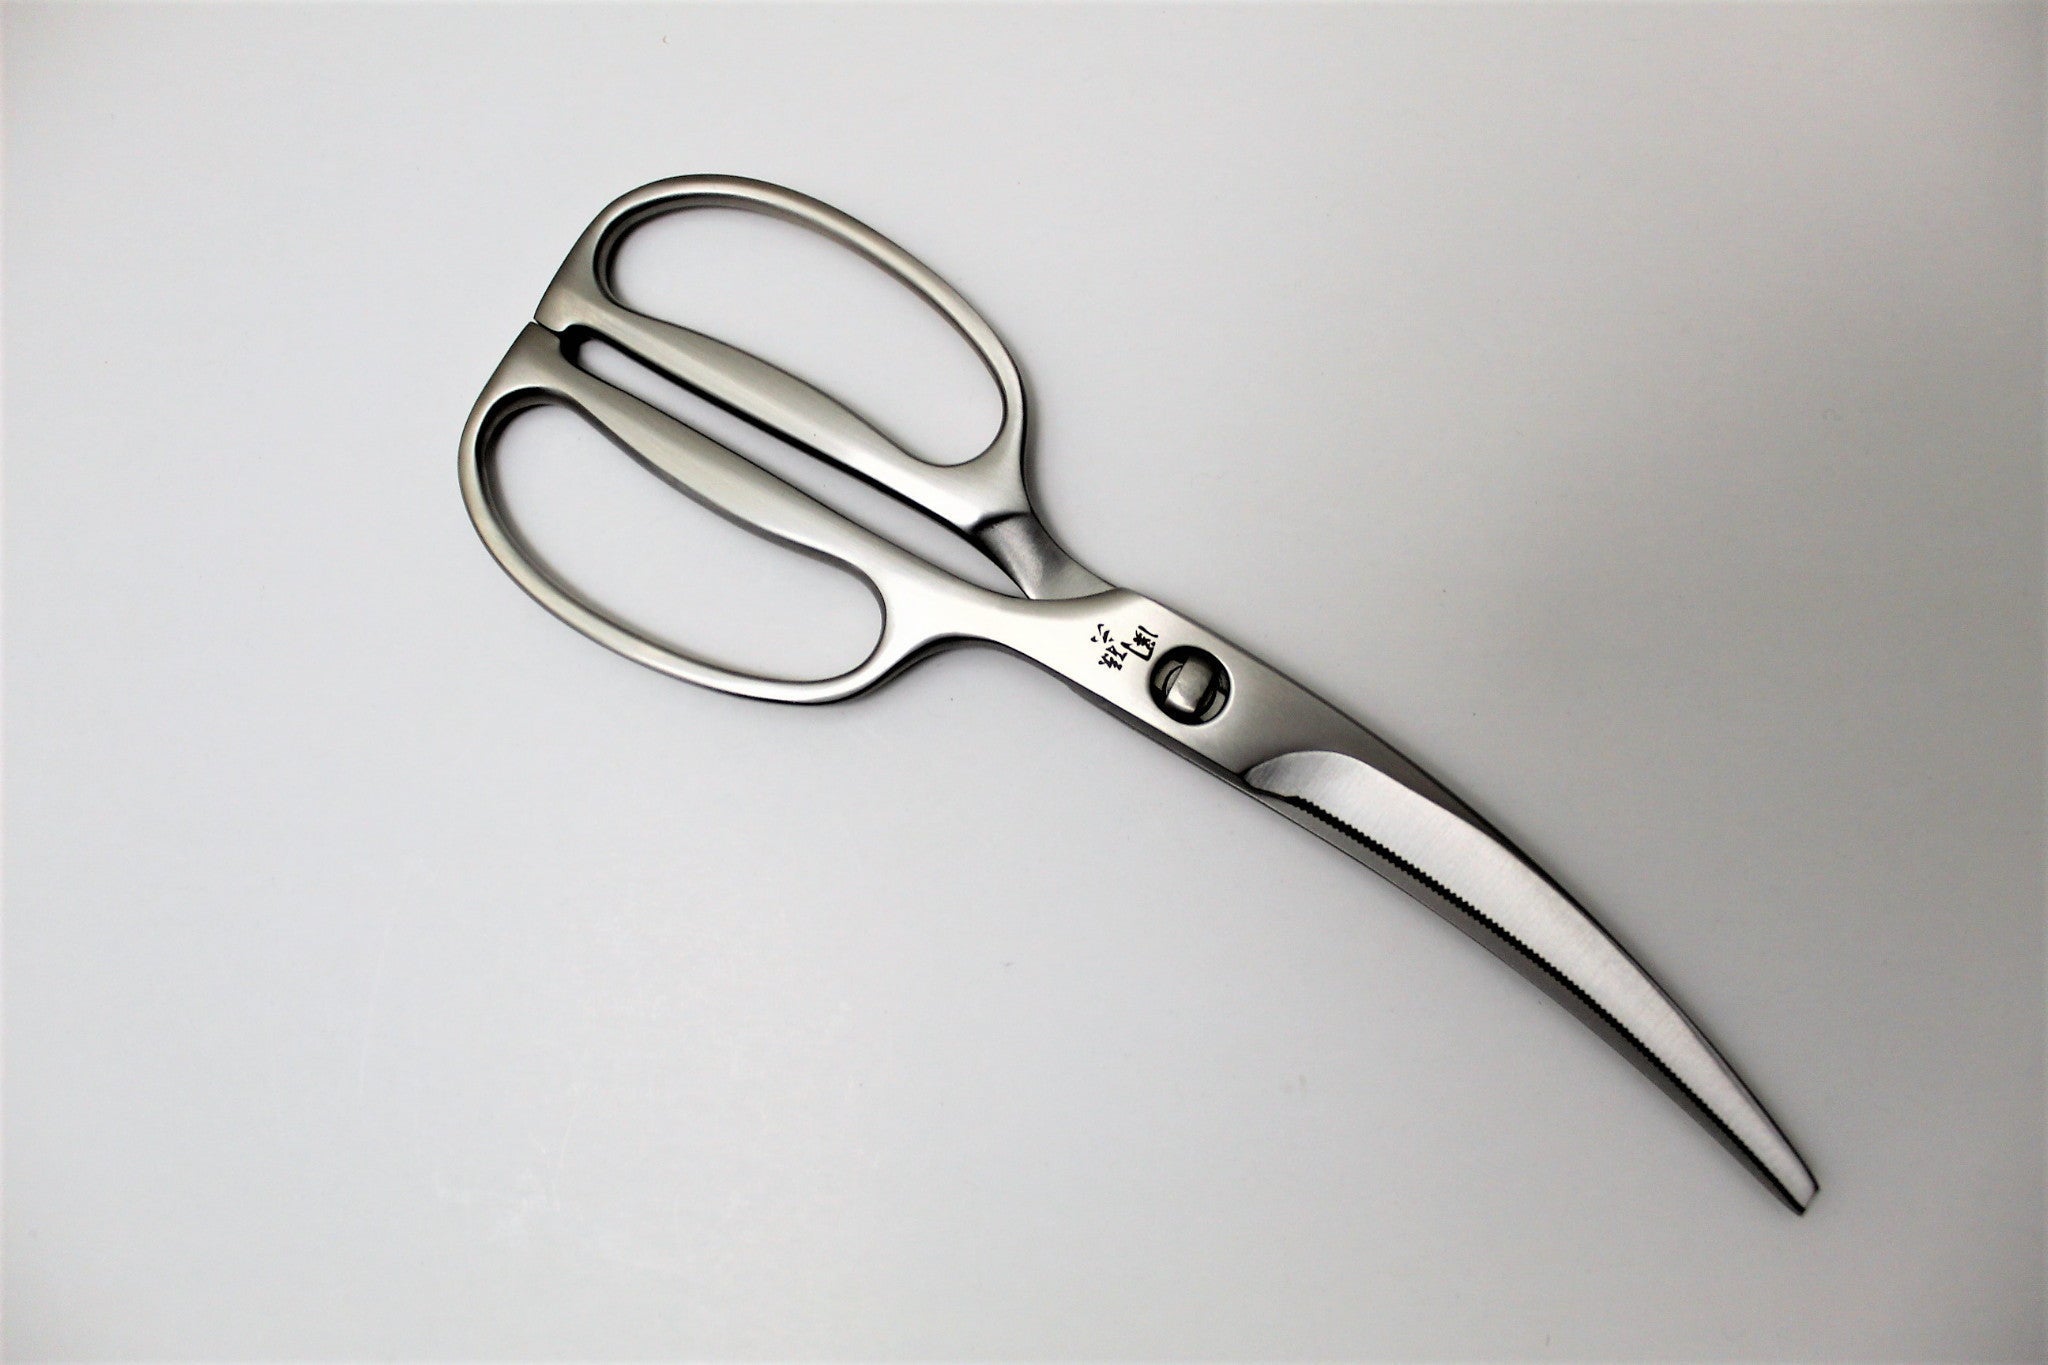 Japanese Kitchen Scissors - Kagayaki Shears